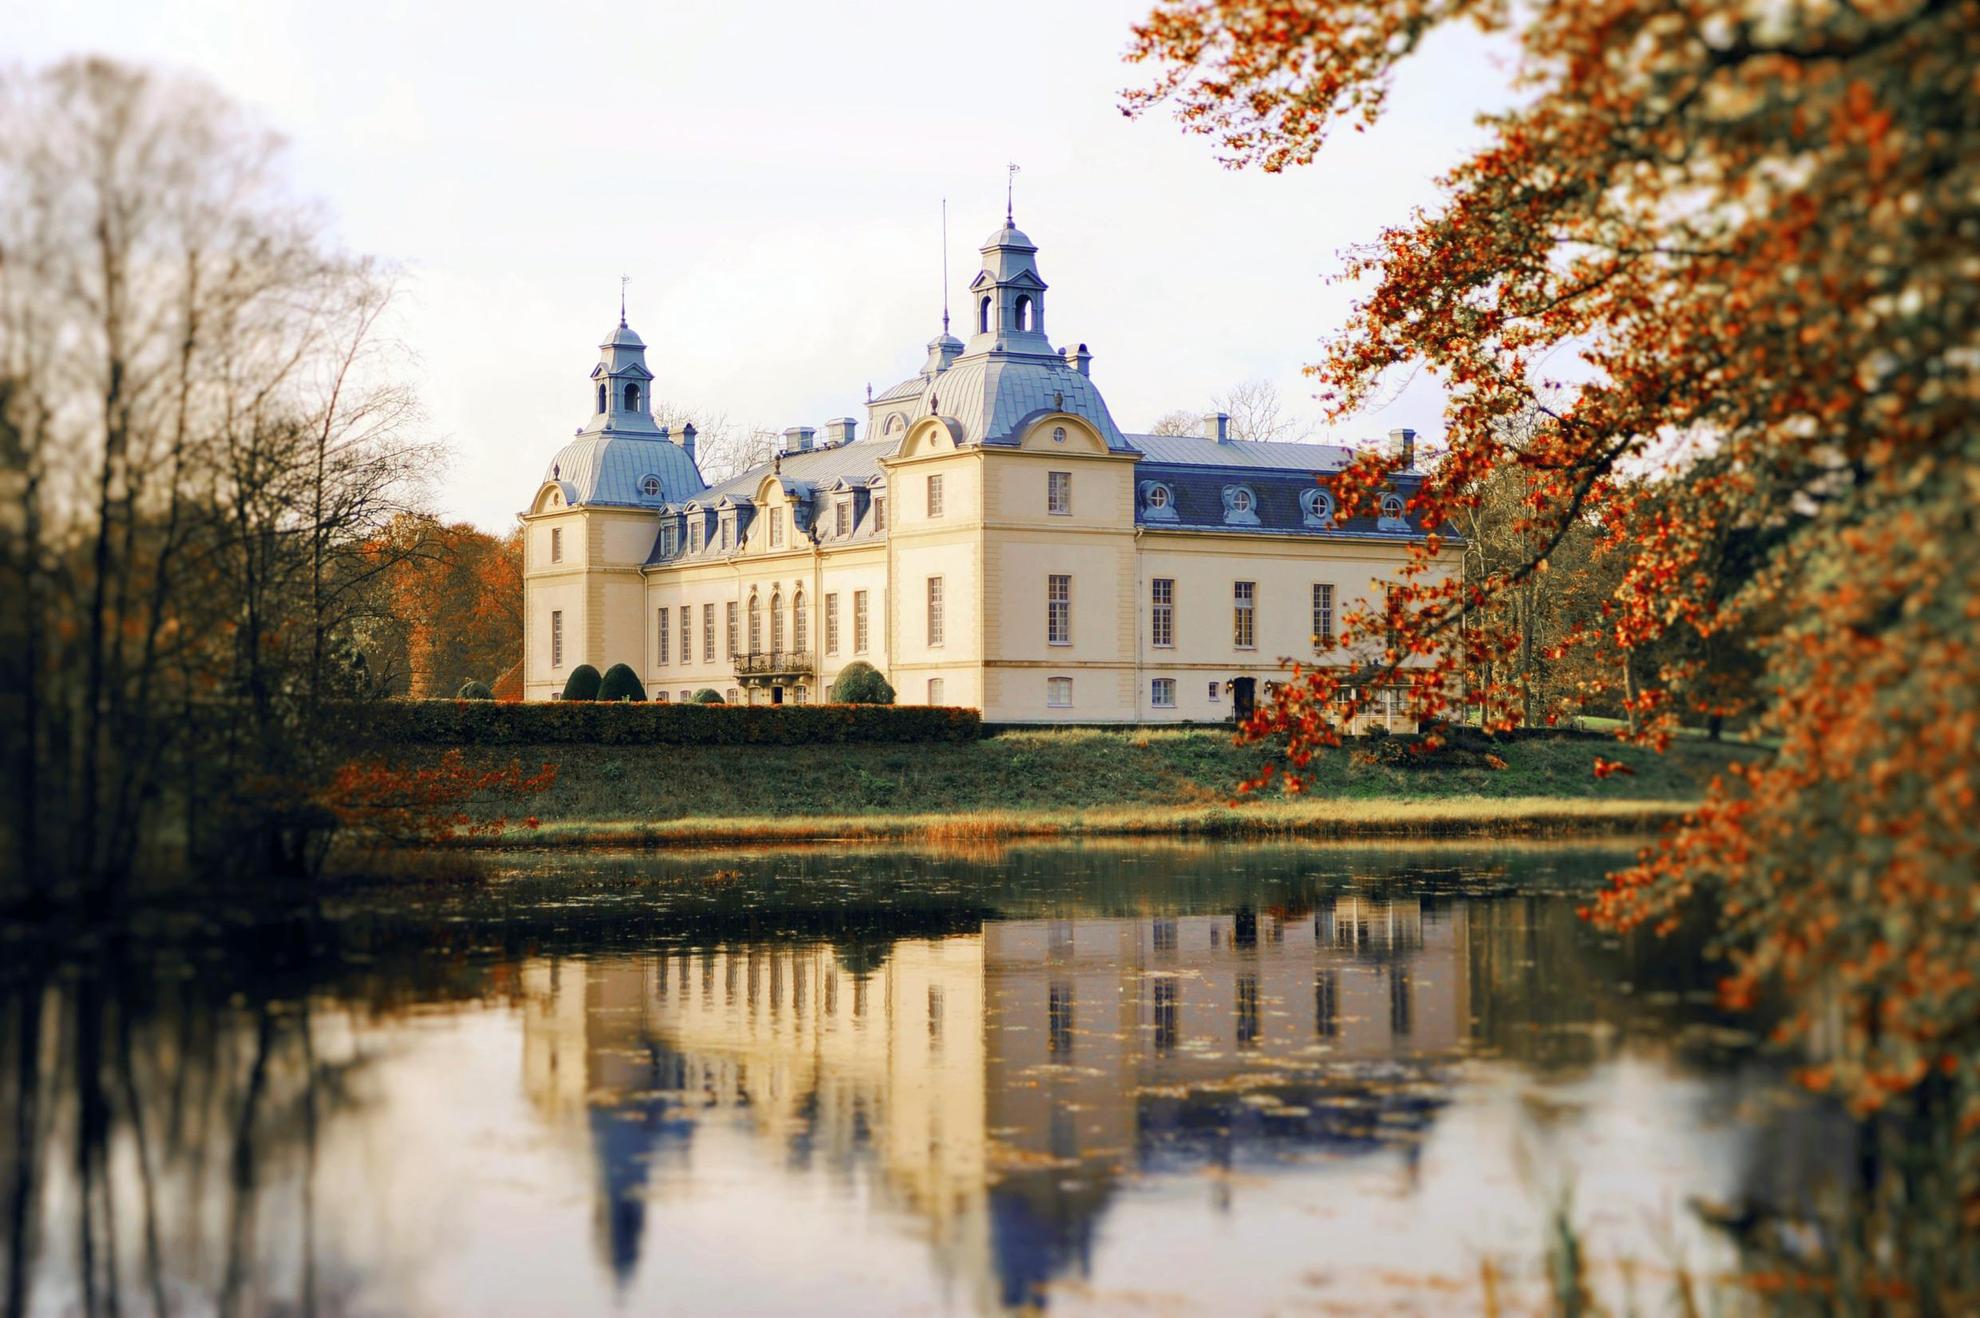 Le château de Kronovall à côté d'un lac durant l'automne. Le château se reflète sur l'eau.